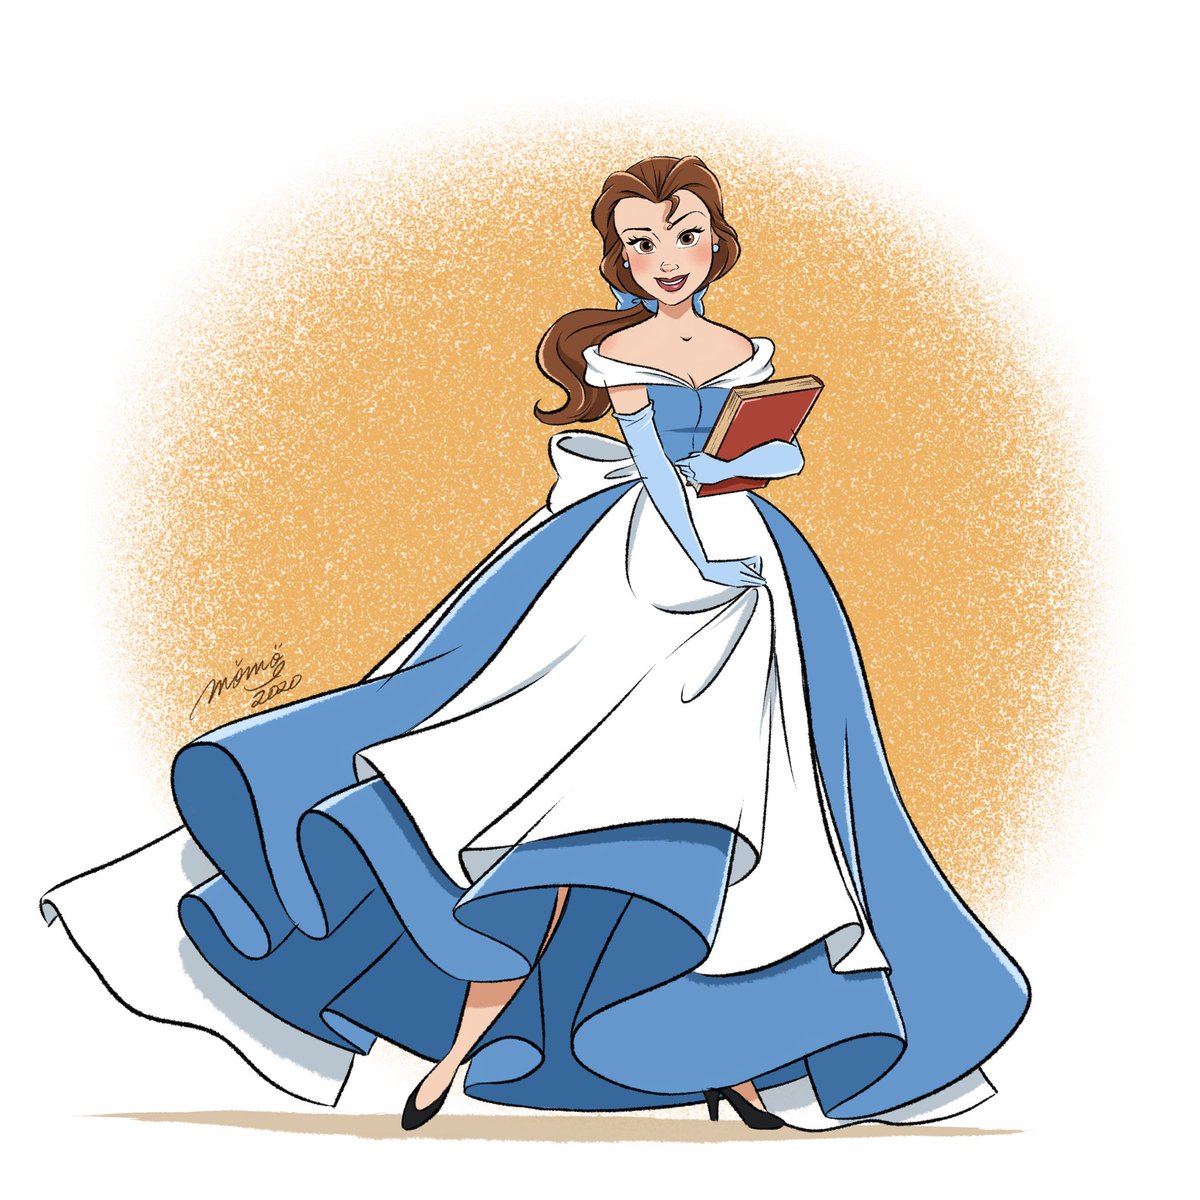 Duckymomo プリンセスになる前の衣装をイメージしたドレスを描いてみました Disney Disneyprincess Belle Cinderella ディズニープリンセス ベル シンデレラ ドレス